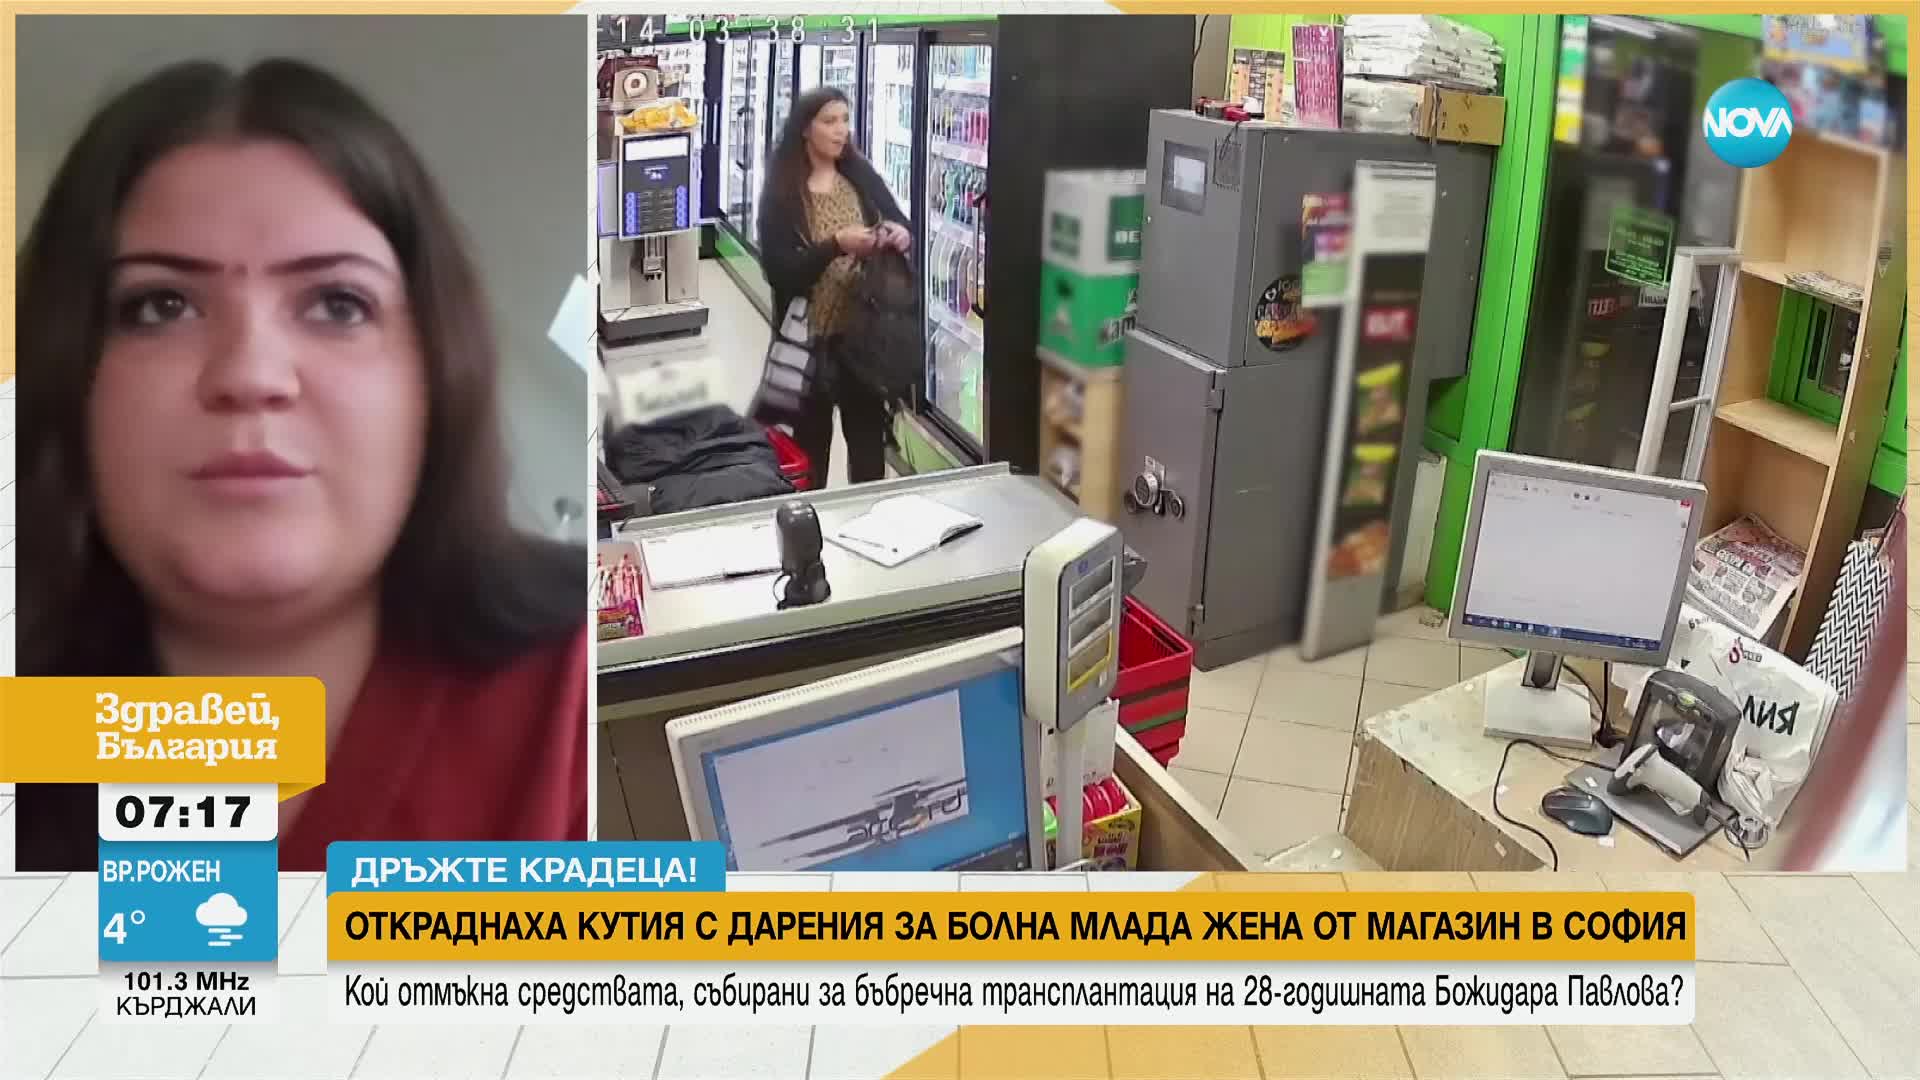 "Дръжте крадеца": Задигнаха кутия за дарения от магазин в София